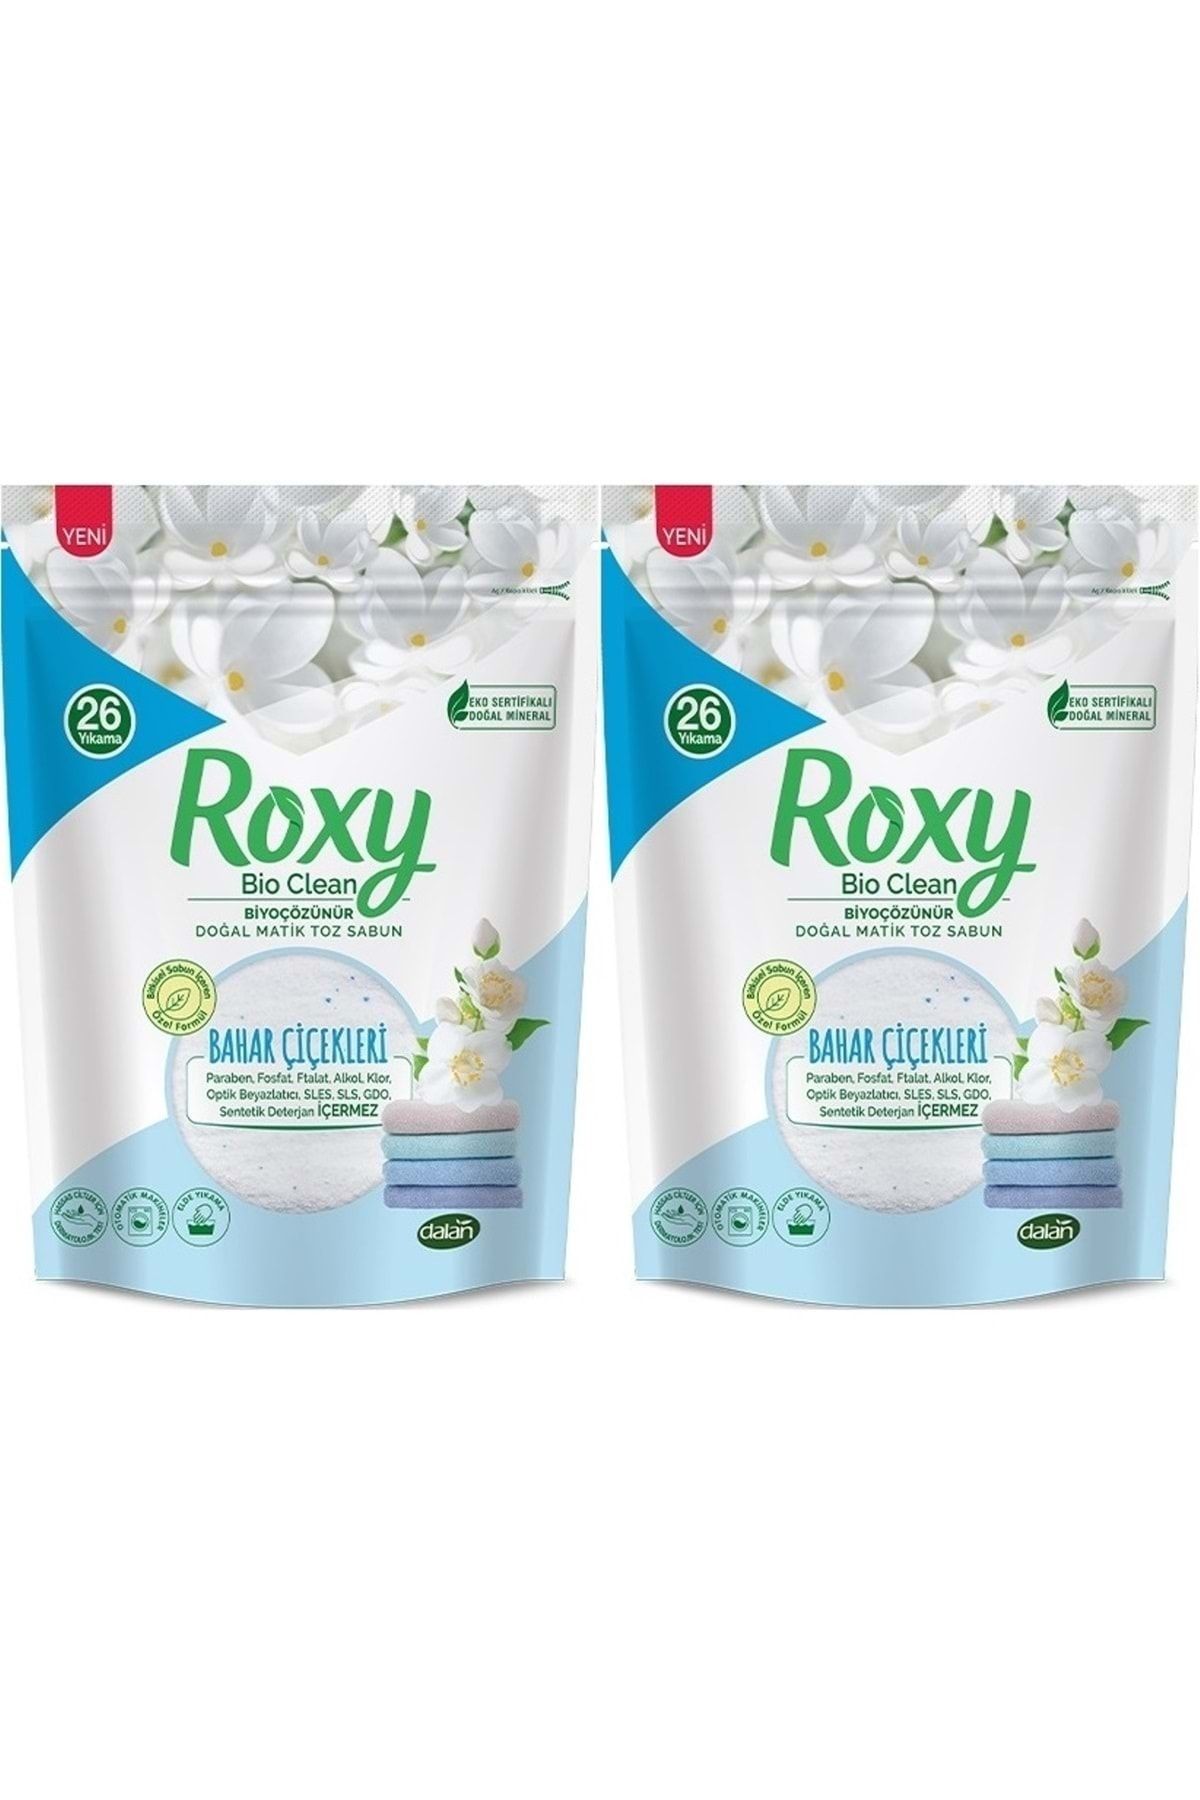 Dalan Roxy Bio Clean Matik Sabun Tozu 800gr Bahar Çiçekleri (2 Li Set) (52 Yıkama)